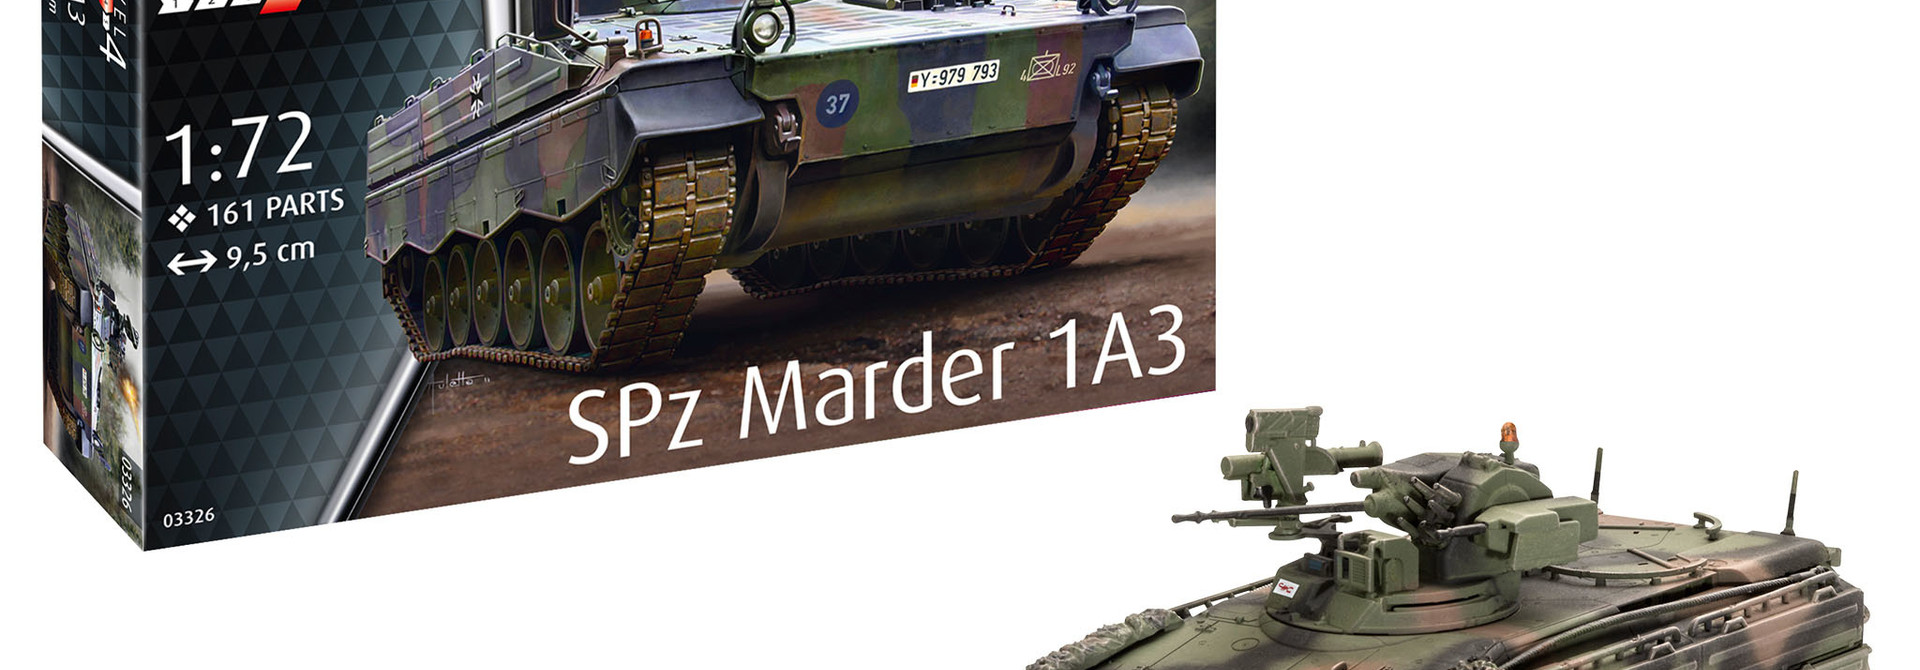 1:72 SPz Marder 1A3